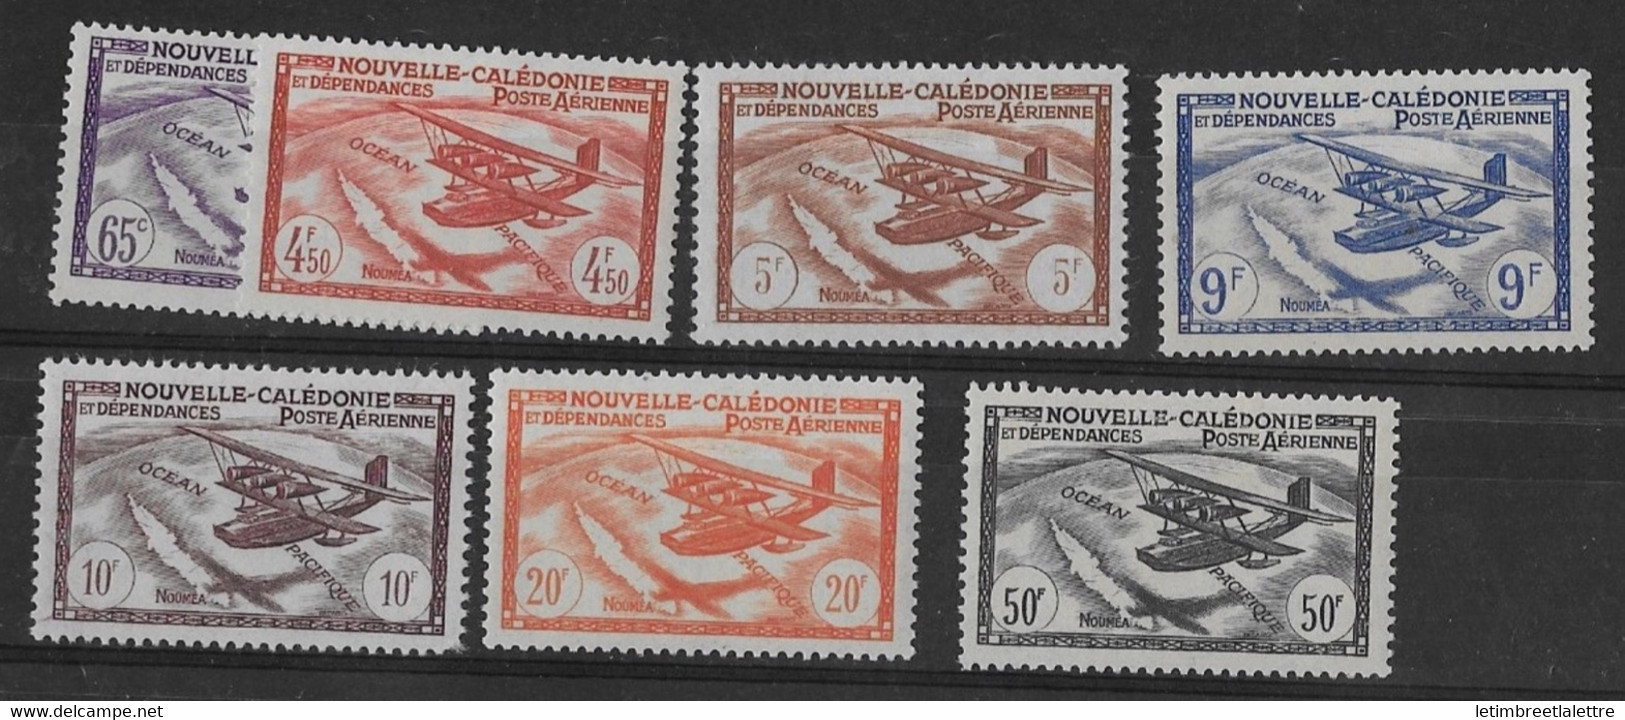 ⭐ Nouvelle Calédonie - Poste Aérienne - YT N° 39 à 45 ** - Neuf Sans Charnière - 1942 / 1943 ⭐ - Ongebruikt